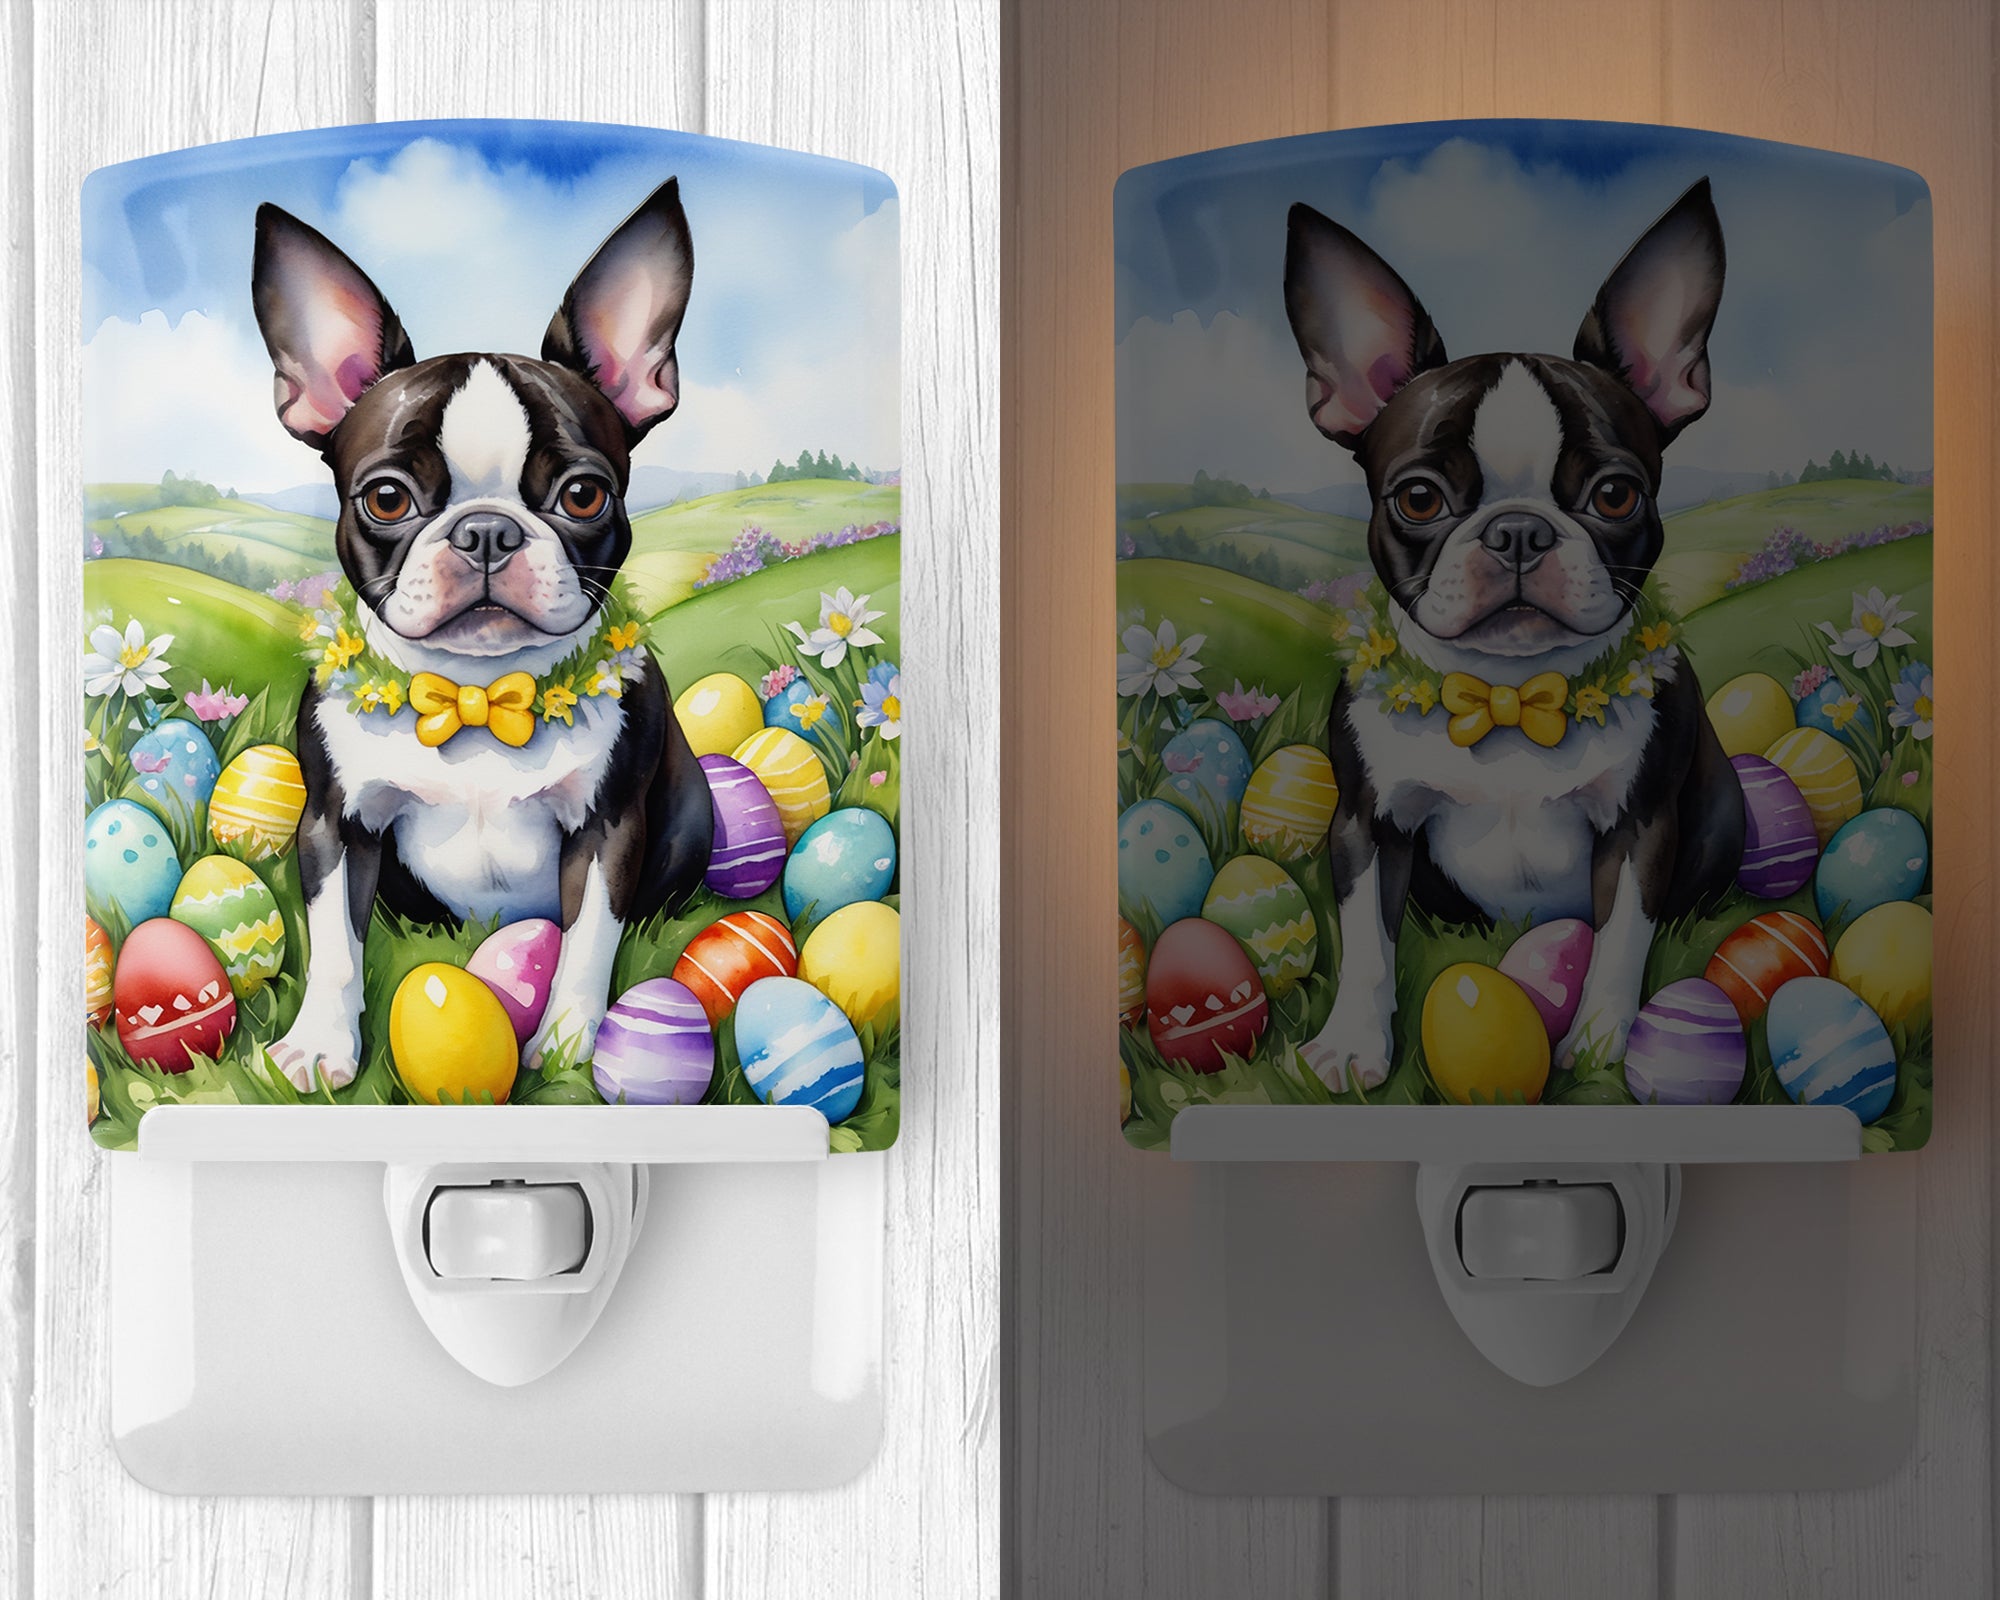 Buy this Boston Terrier Easter Egg Hunt Ceramic Night Light